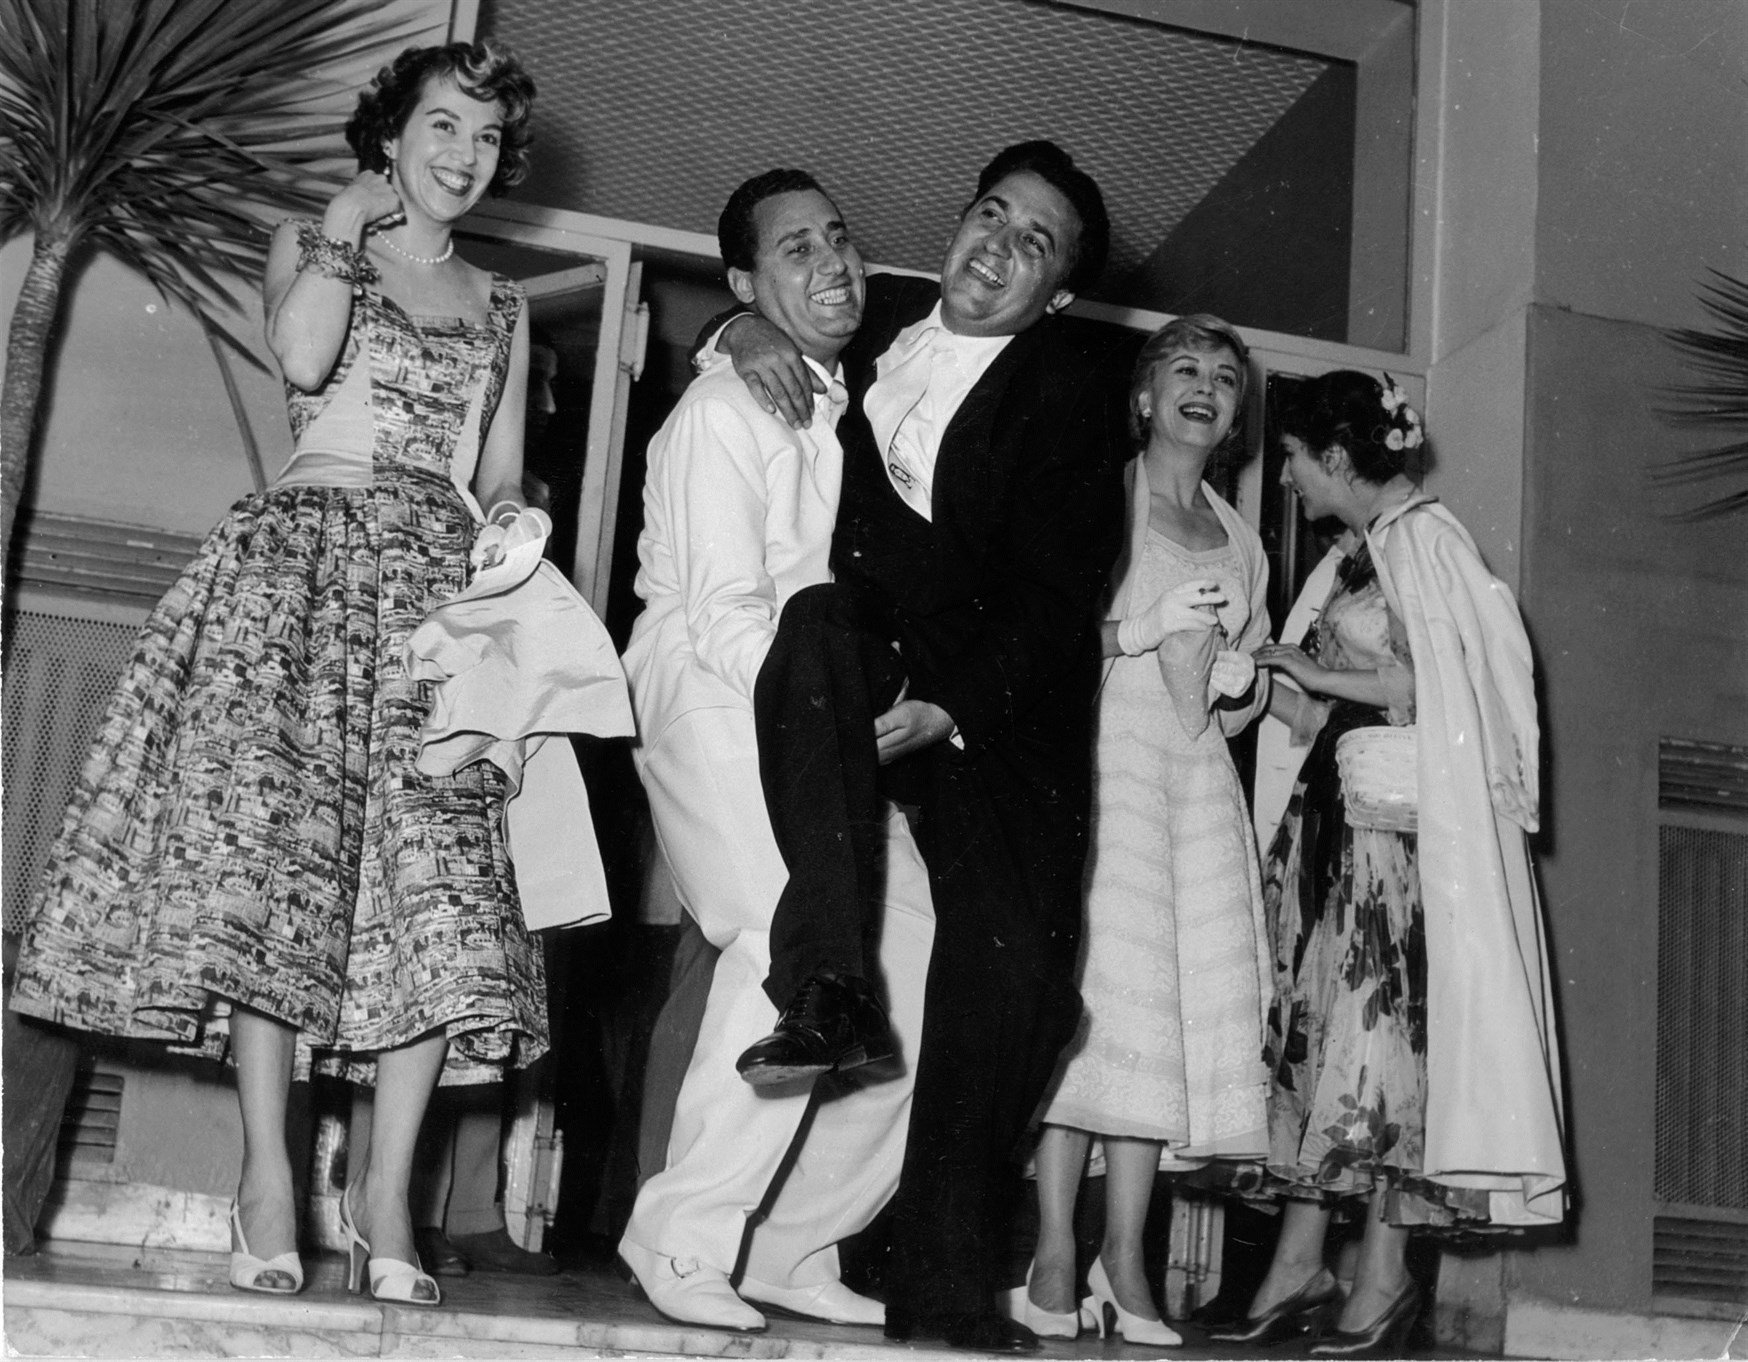 Federico Fellini, Giulietta Masina and Alberto Sordi